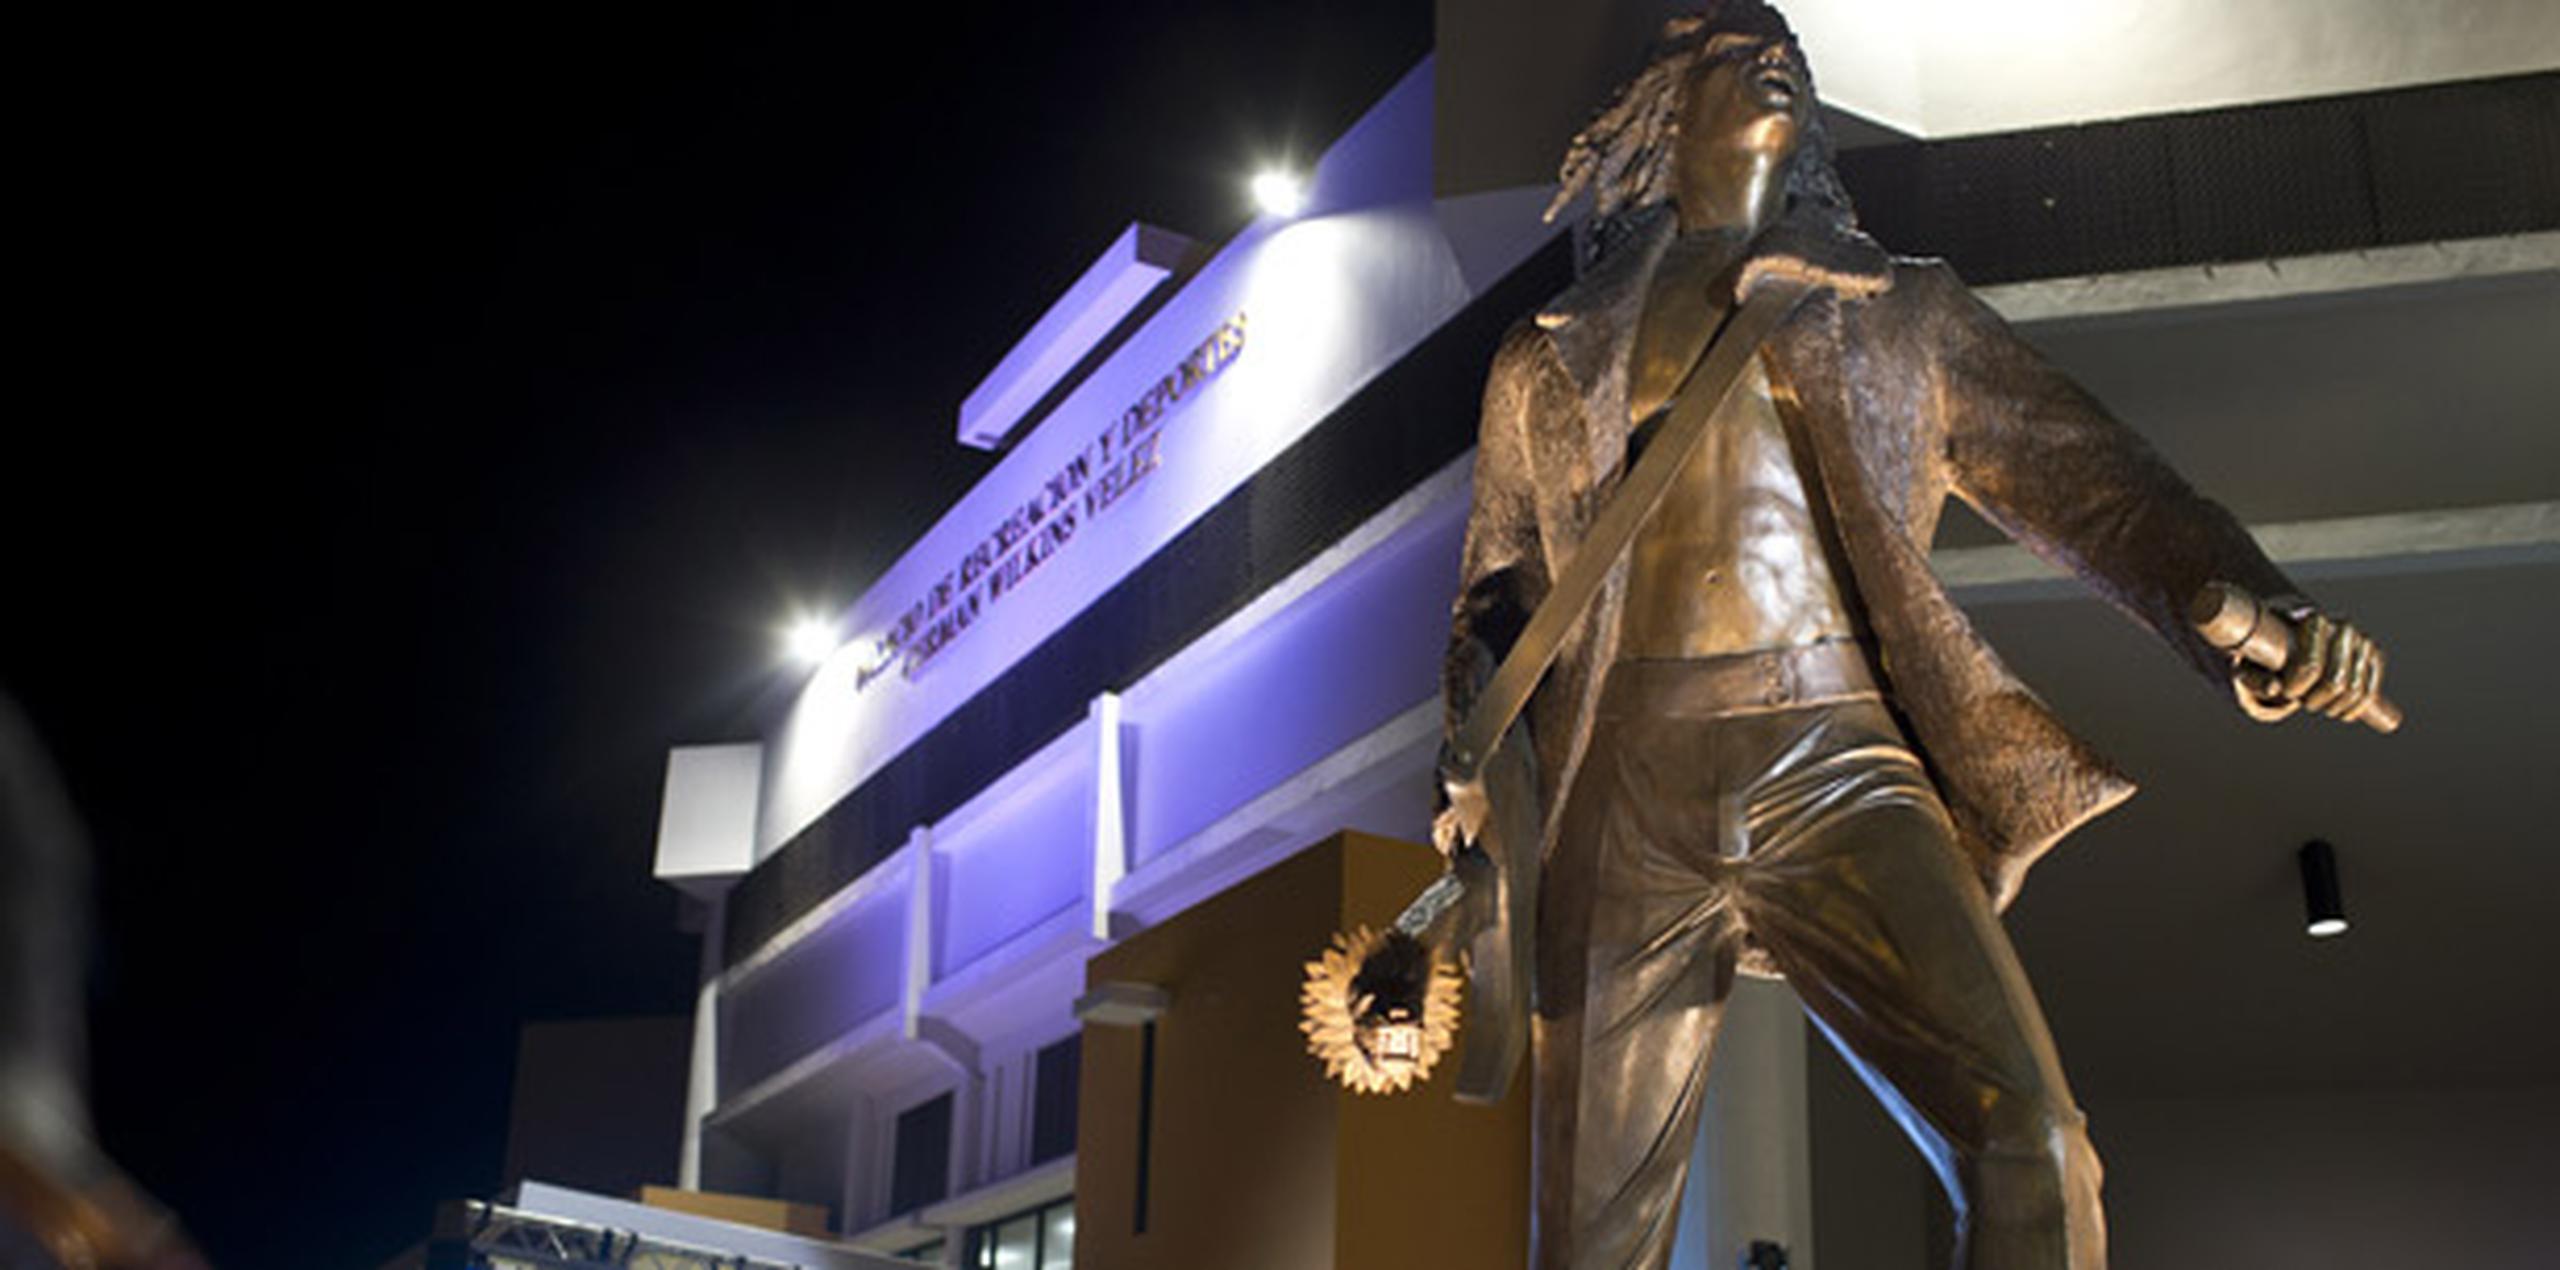 La escultura recrea la imagen del Wilkins de la década de 1990, con su melena rizada al viento, chaqueta, pantalones de pata ancha y su inseparable guitarra. (jorge.ramirez@gfrmedia.com)